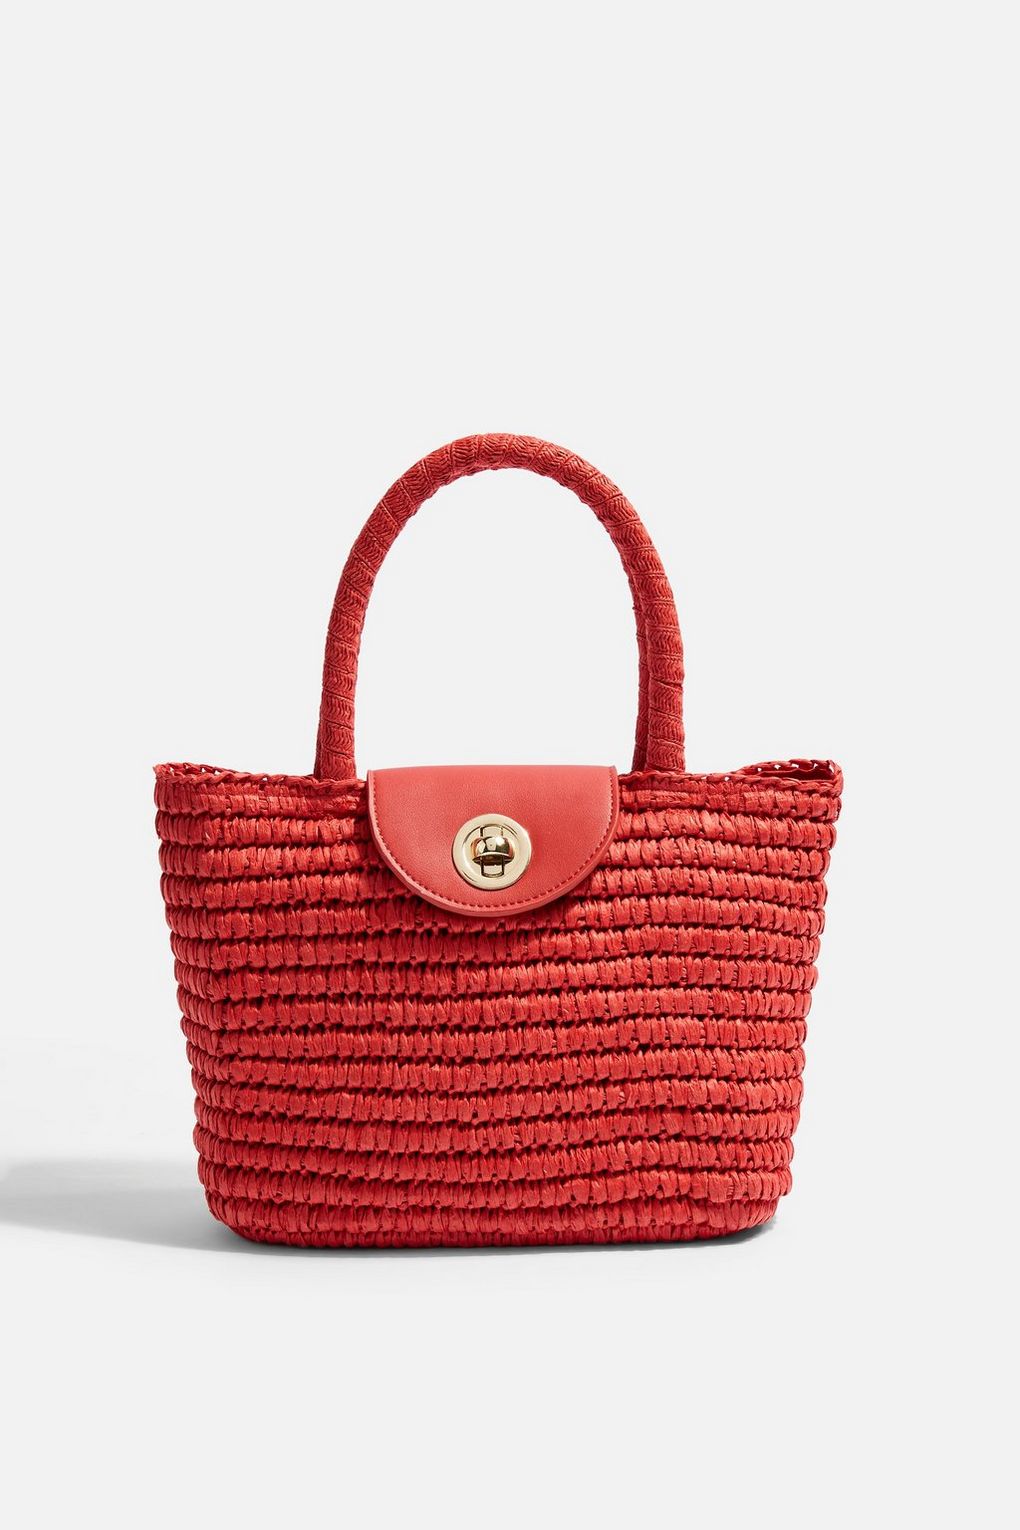 red straw bag.jpg